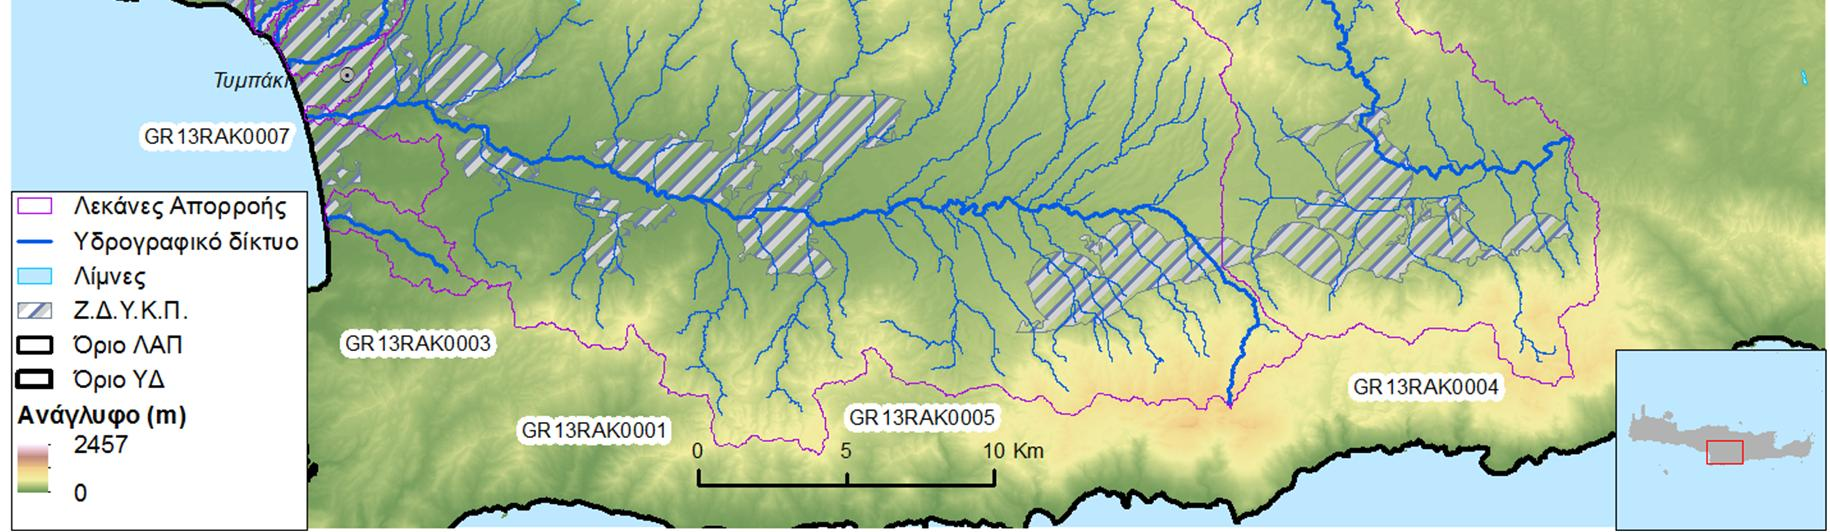 Σχήμα 4.3: Υδατορεύματα και λεκάνες απορροής των ΖΔΥΚΠ «Χαμηλή ζώνη περιοχών Στάβιες - Αγ. Φωτιά» GR13RAK0004 και «Κάτω ρούς Γερω-Ποτάμου, περιοχή Τυμπάκι» GR13RAK0007 Πίνακας 4.